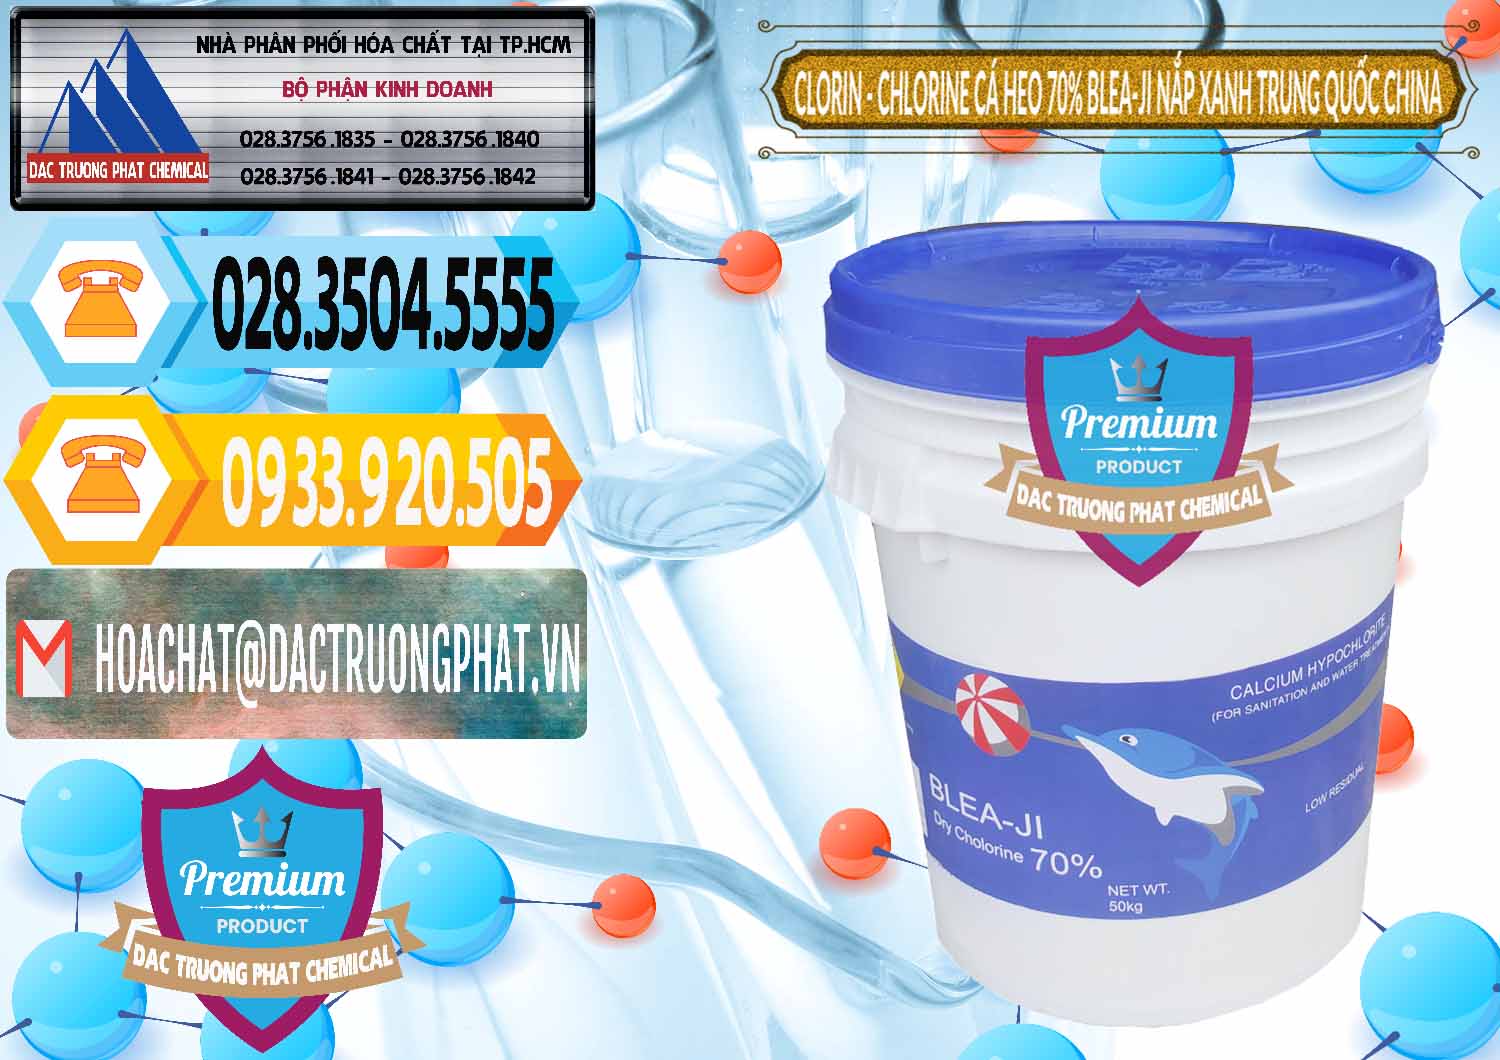 Kinh doanh ( bán ) Clorin - Chlorine Cá Heo 70% Cá Heo Blea-Ji Thùng Tròn Nắp Xanh Trung Quốc China - 0208 - Nhà nhập khẩu - phân phối hóa chất tại TP.HCM - hoachattayrua.net